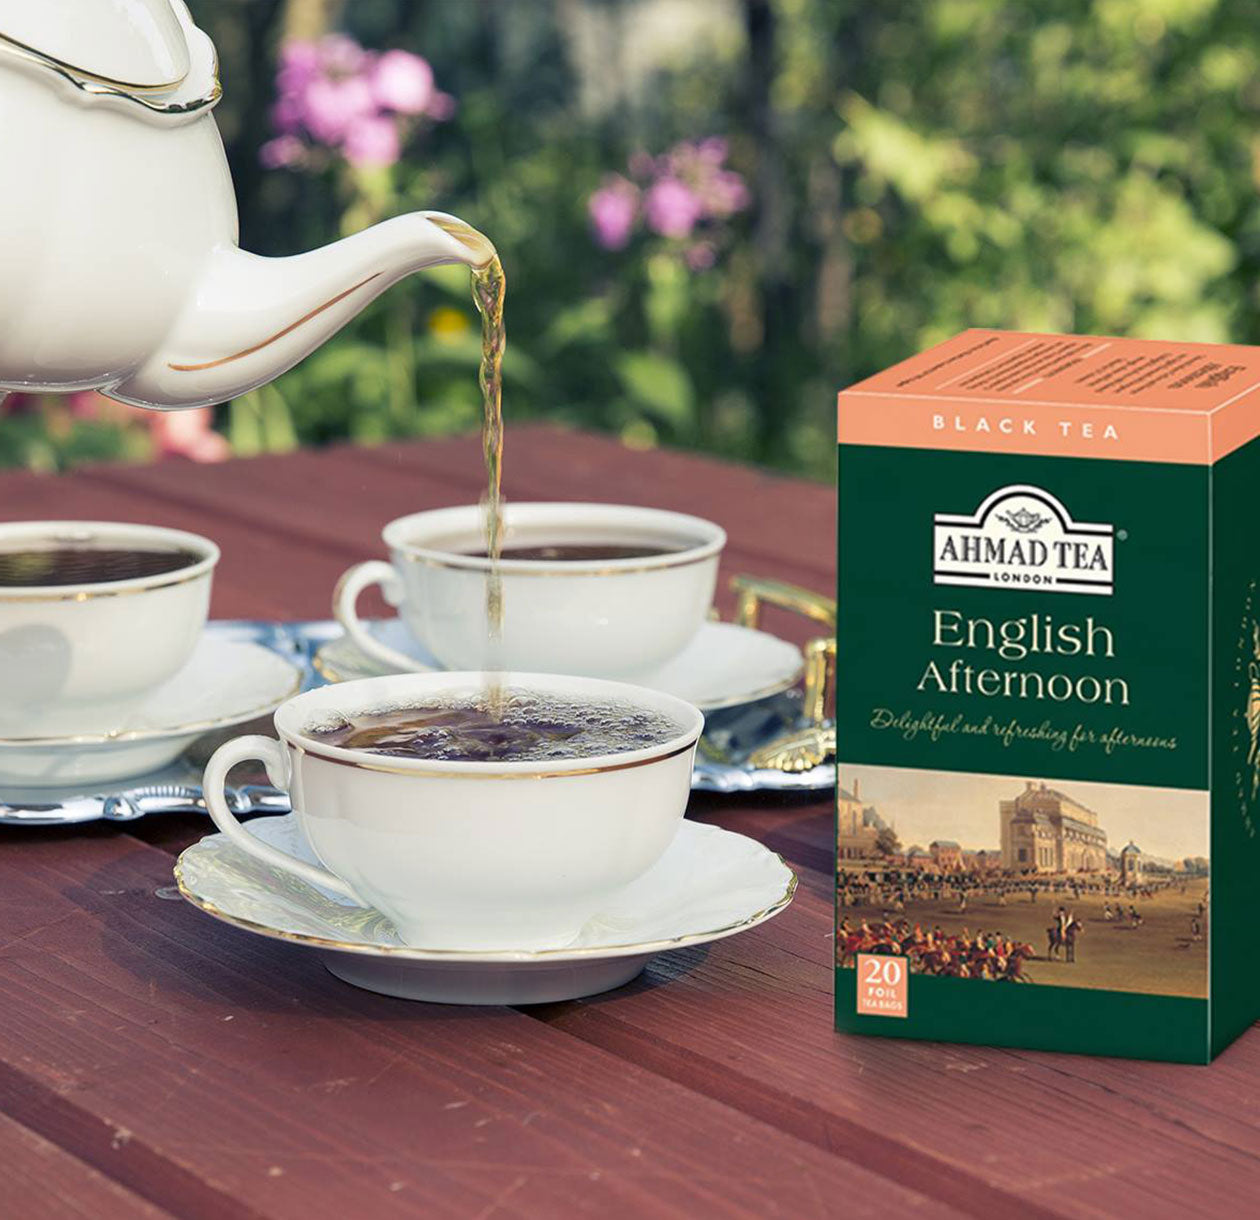 Ahmad Tea - English Tea No. 1 Teabags 20s – Taste of Britain Malmö